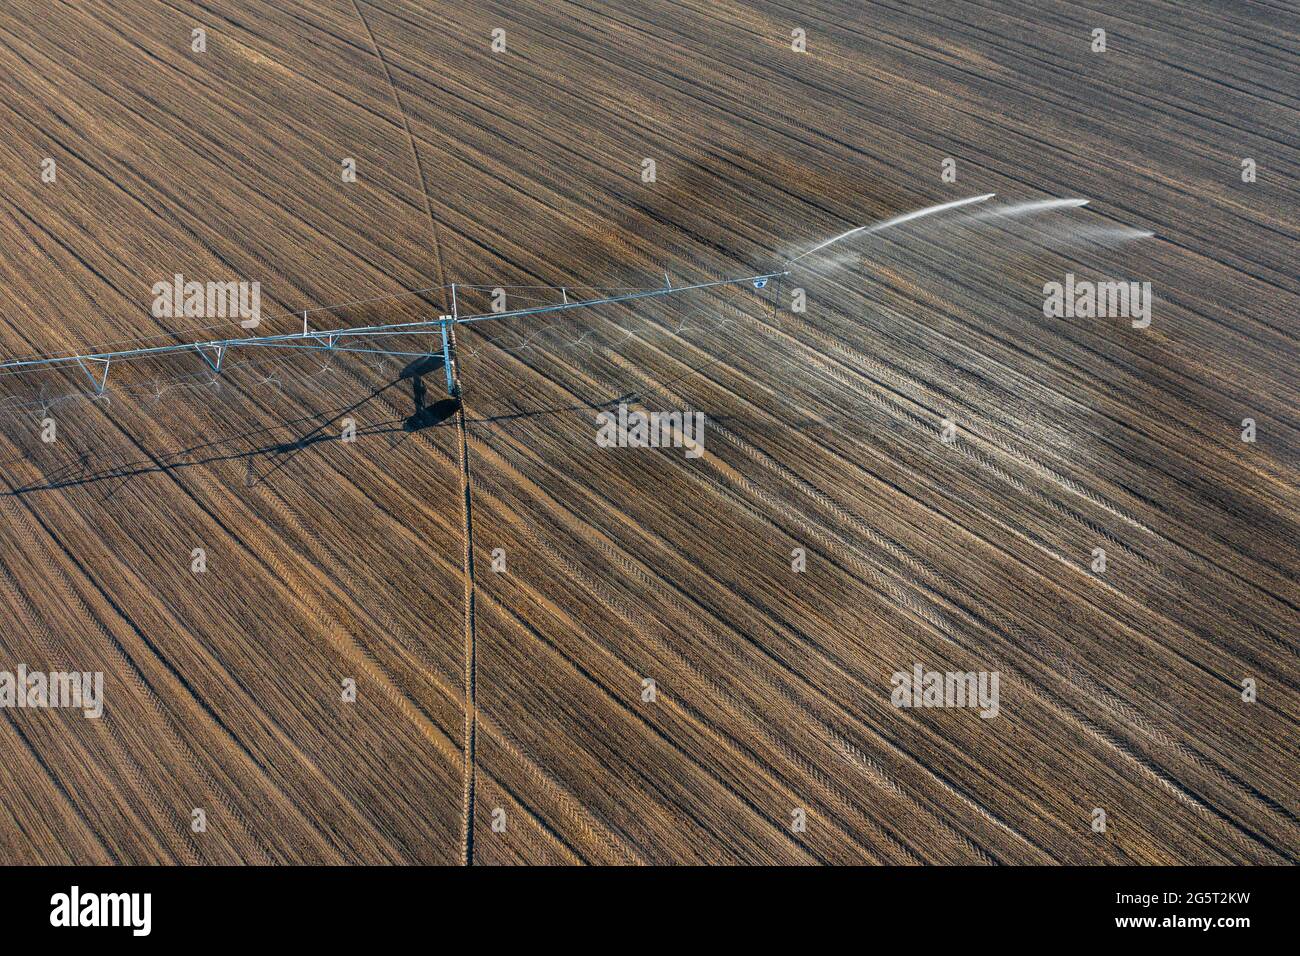 Vue aérienne du système d'irrigation à pivot central pour la pulvérisation des récoltes. Concept agricole, équipement d'arrosage moderne, texture agricole. Banque D'Images